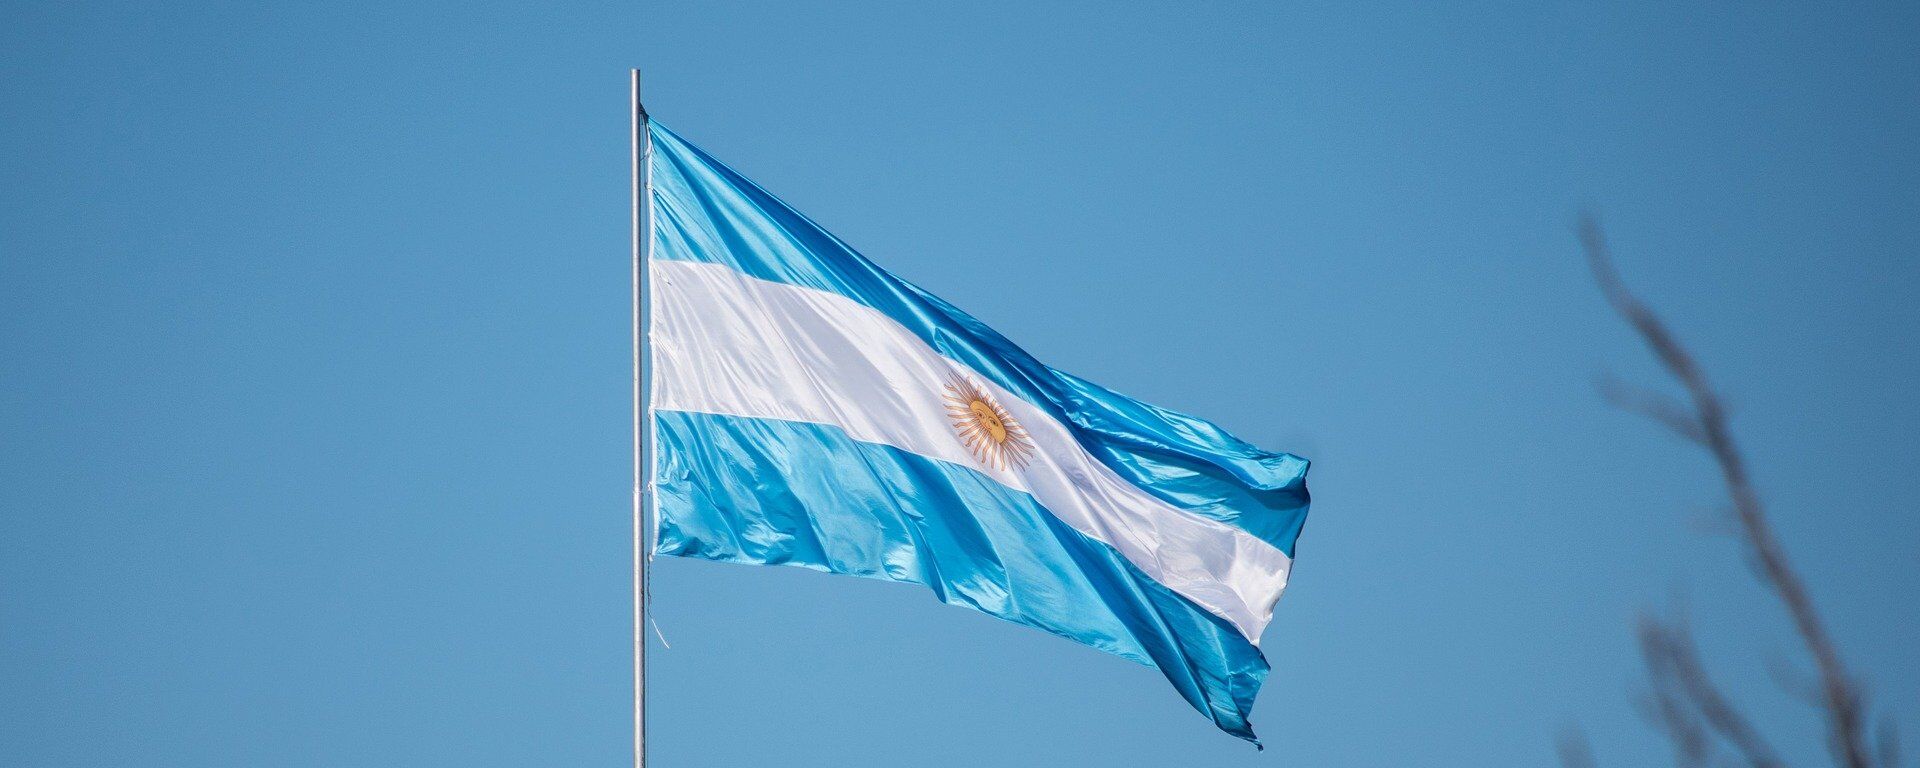 La bandera de Argentina - Sputnik Mundo, 1920, 27.02.2019